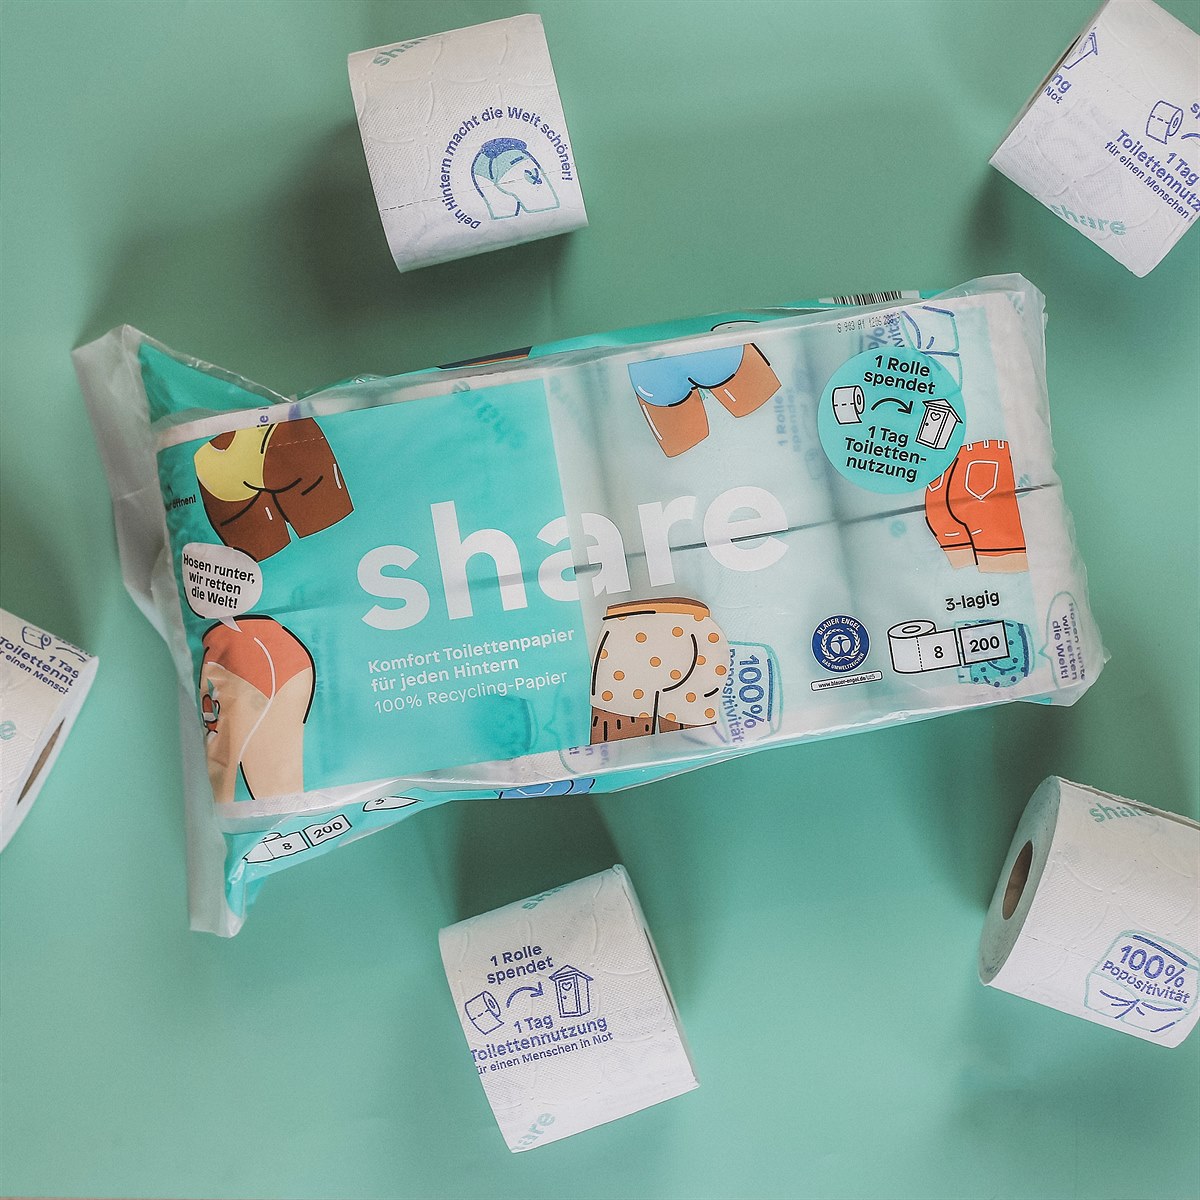 share bringt Toilettenpapier auch in den österreichischen Handel